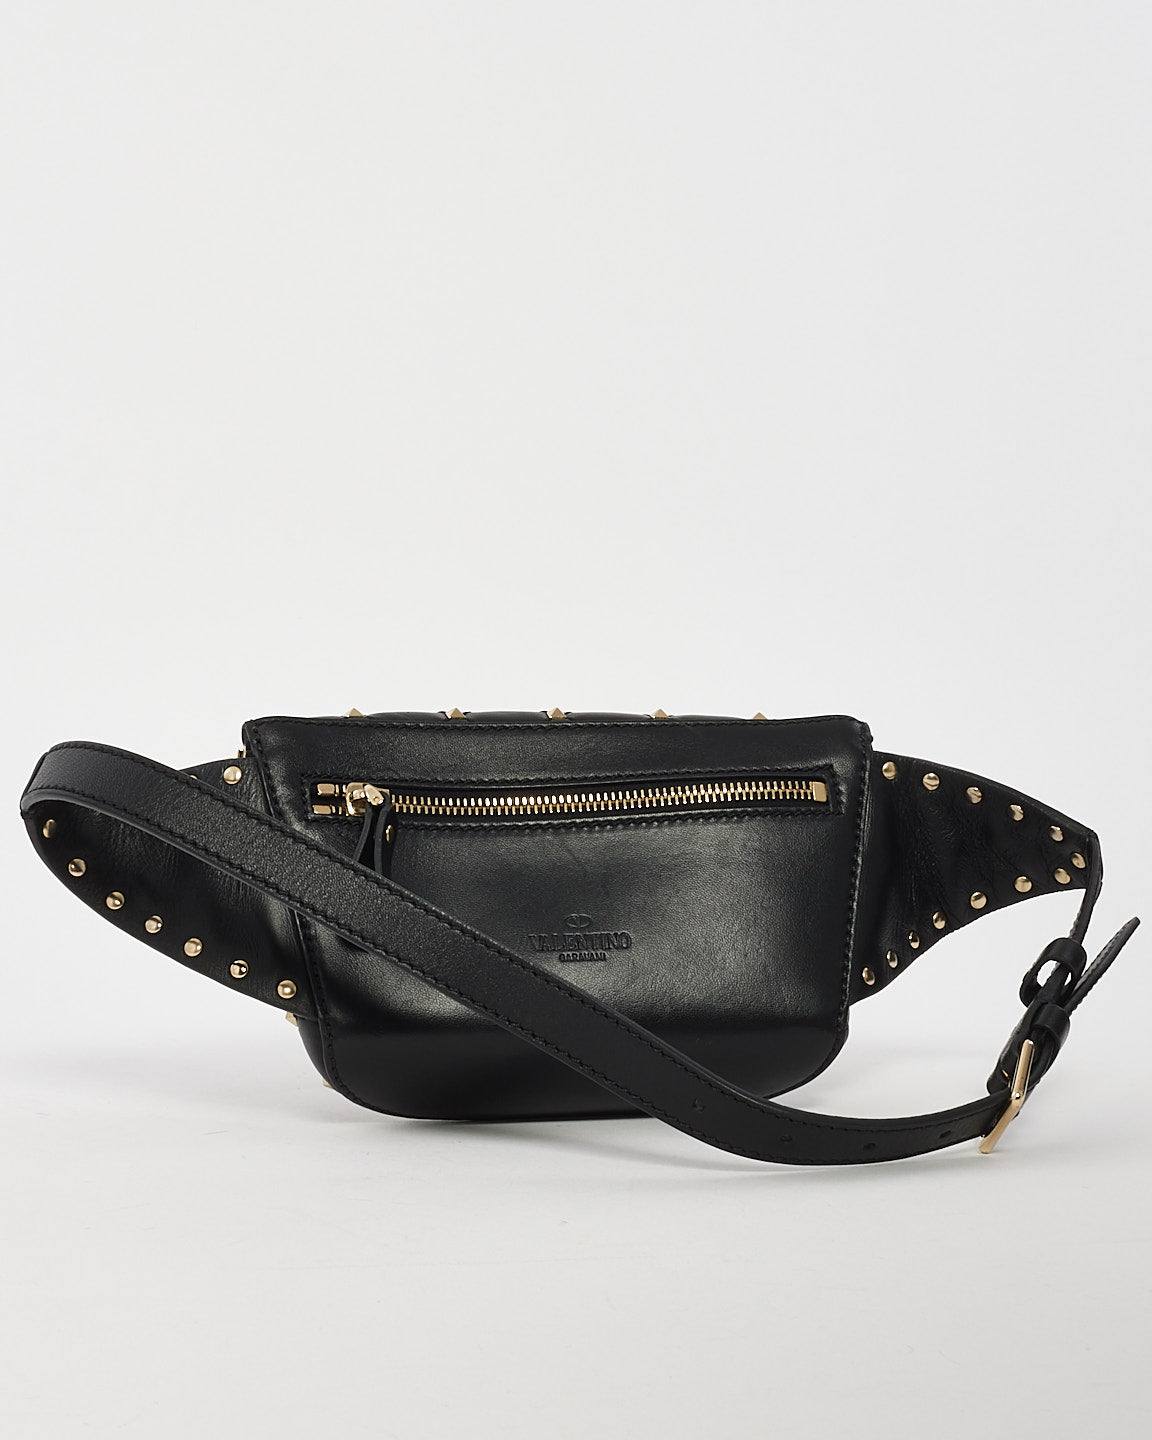 Valentino Black Leather Rockstud Spike Belt bag